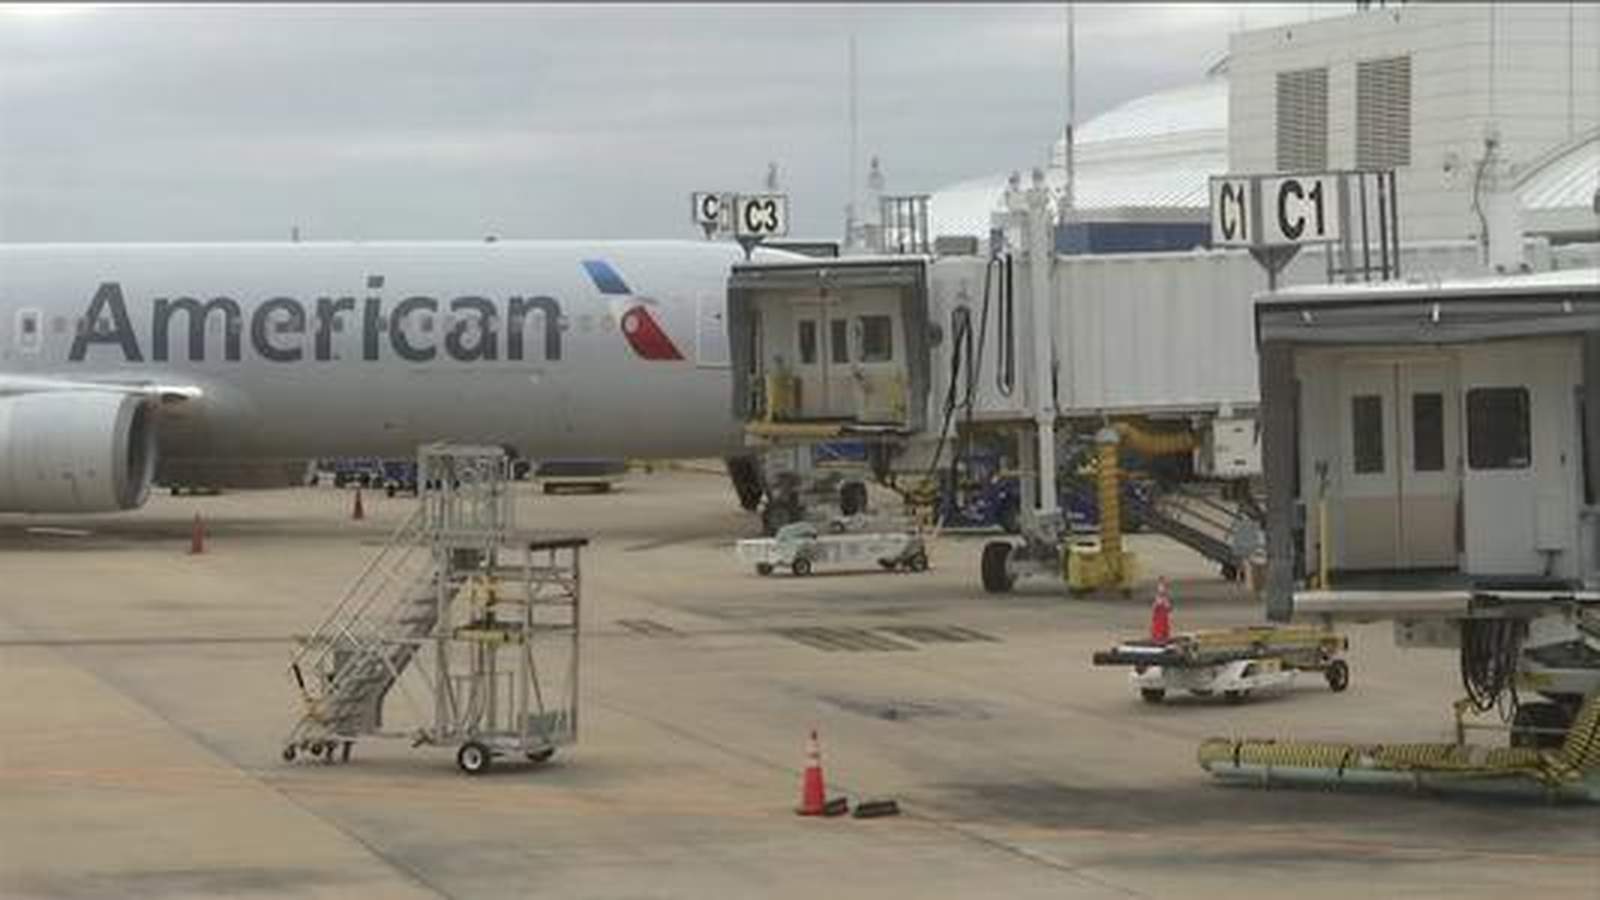 FBI investigating after flight diverted to Jacksonville due to ‘unruly’ passenger